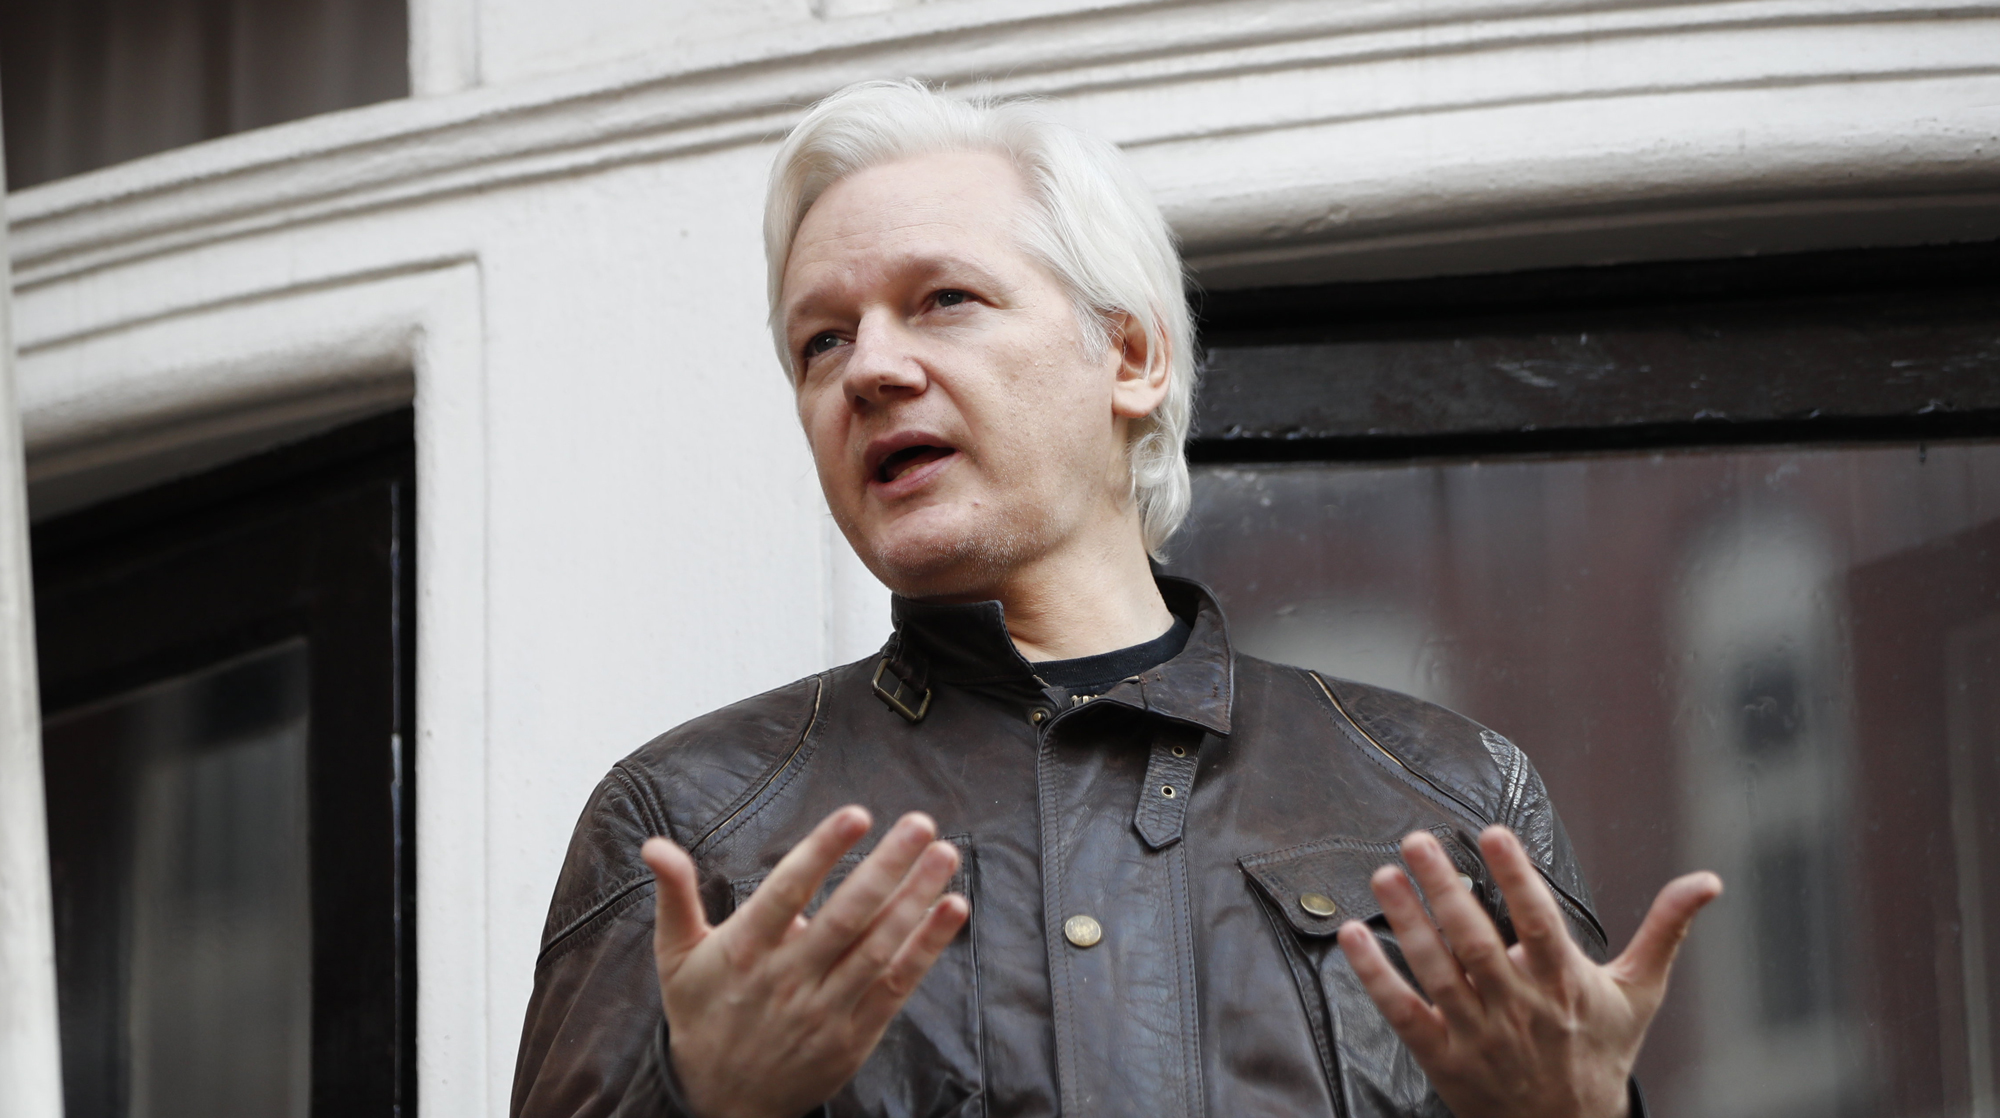 Основатель WikiLeaks был в ярости, услышав о происшествии Фото: © GLOBAL LOOK press/Tolga Akmen